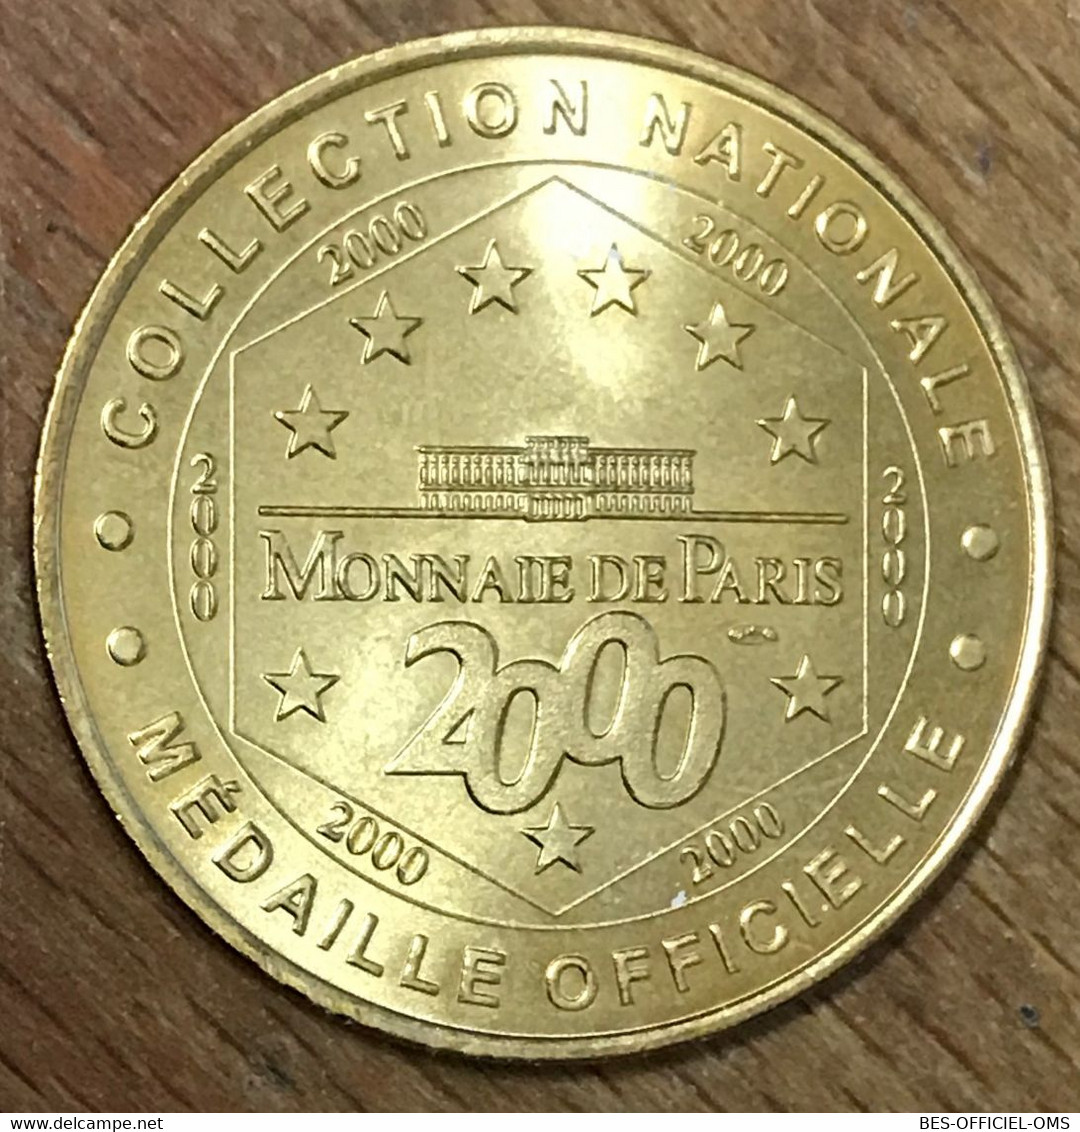 91 ÉVRY CATHÉDRALE DE LA RÉSURRECTION MDP 2000 MÉDAILLE SOUVENIR MONNAIE DE PARIS JETON TOURISTIQUE MEDALS TOKENS COINS - 2000